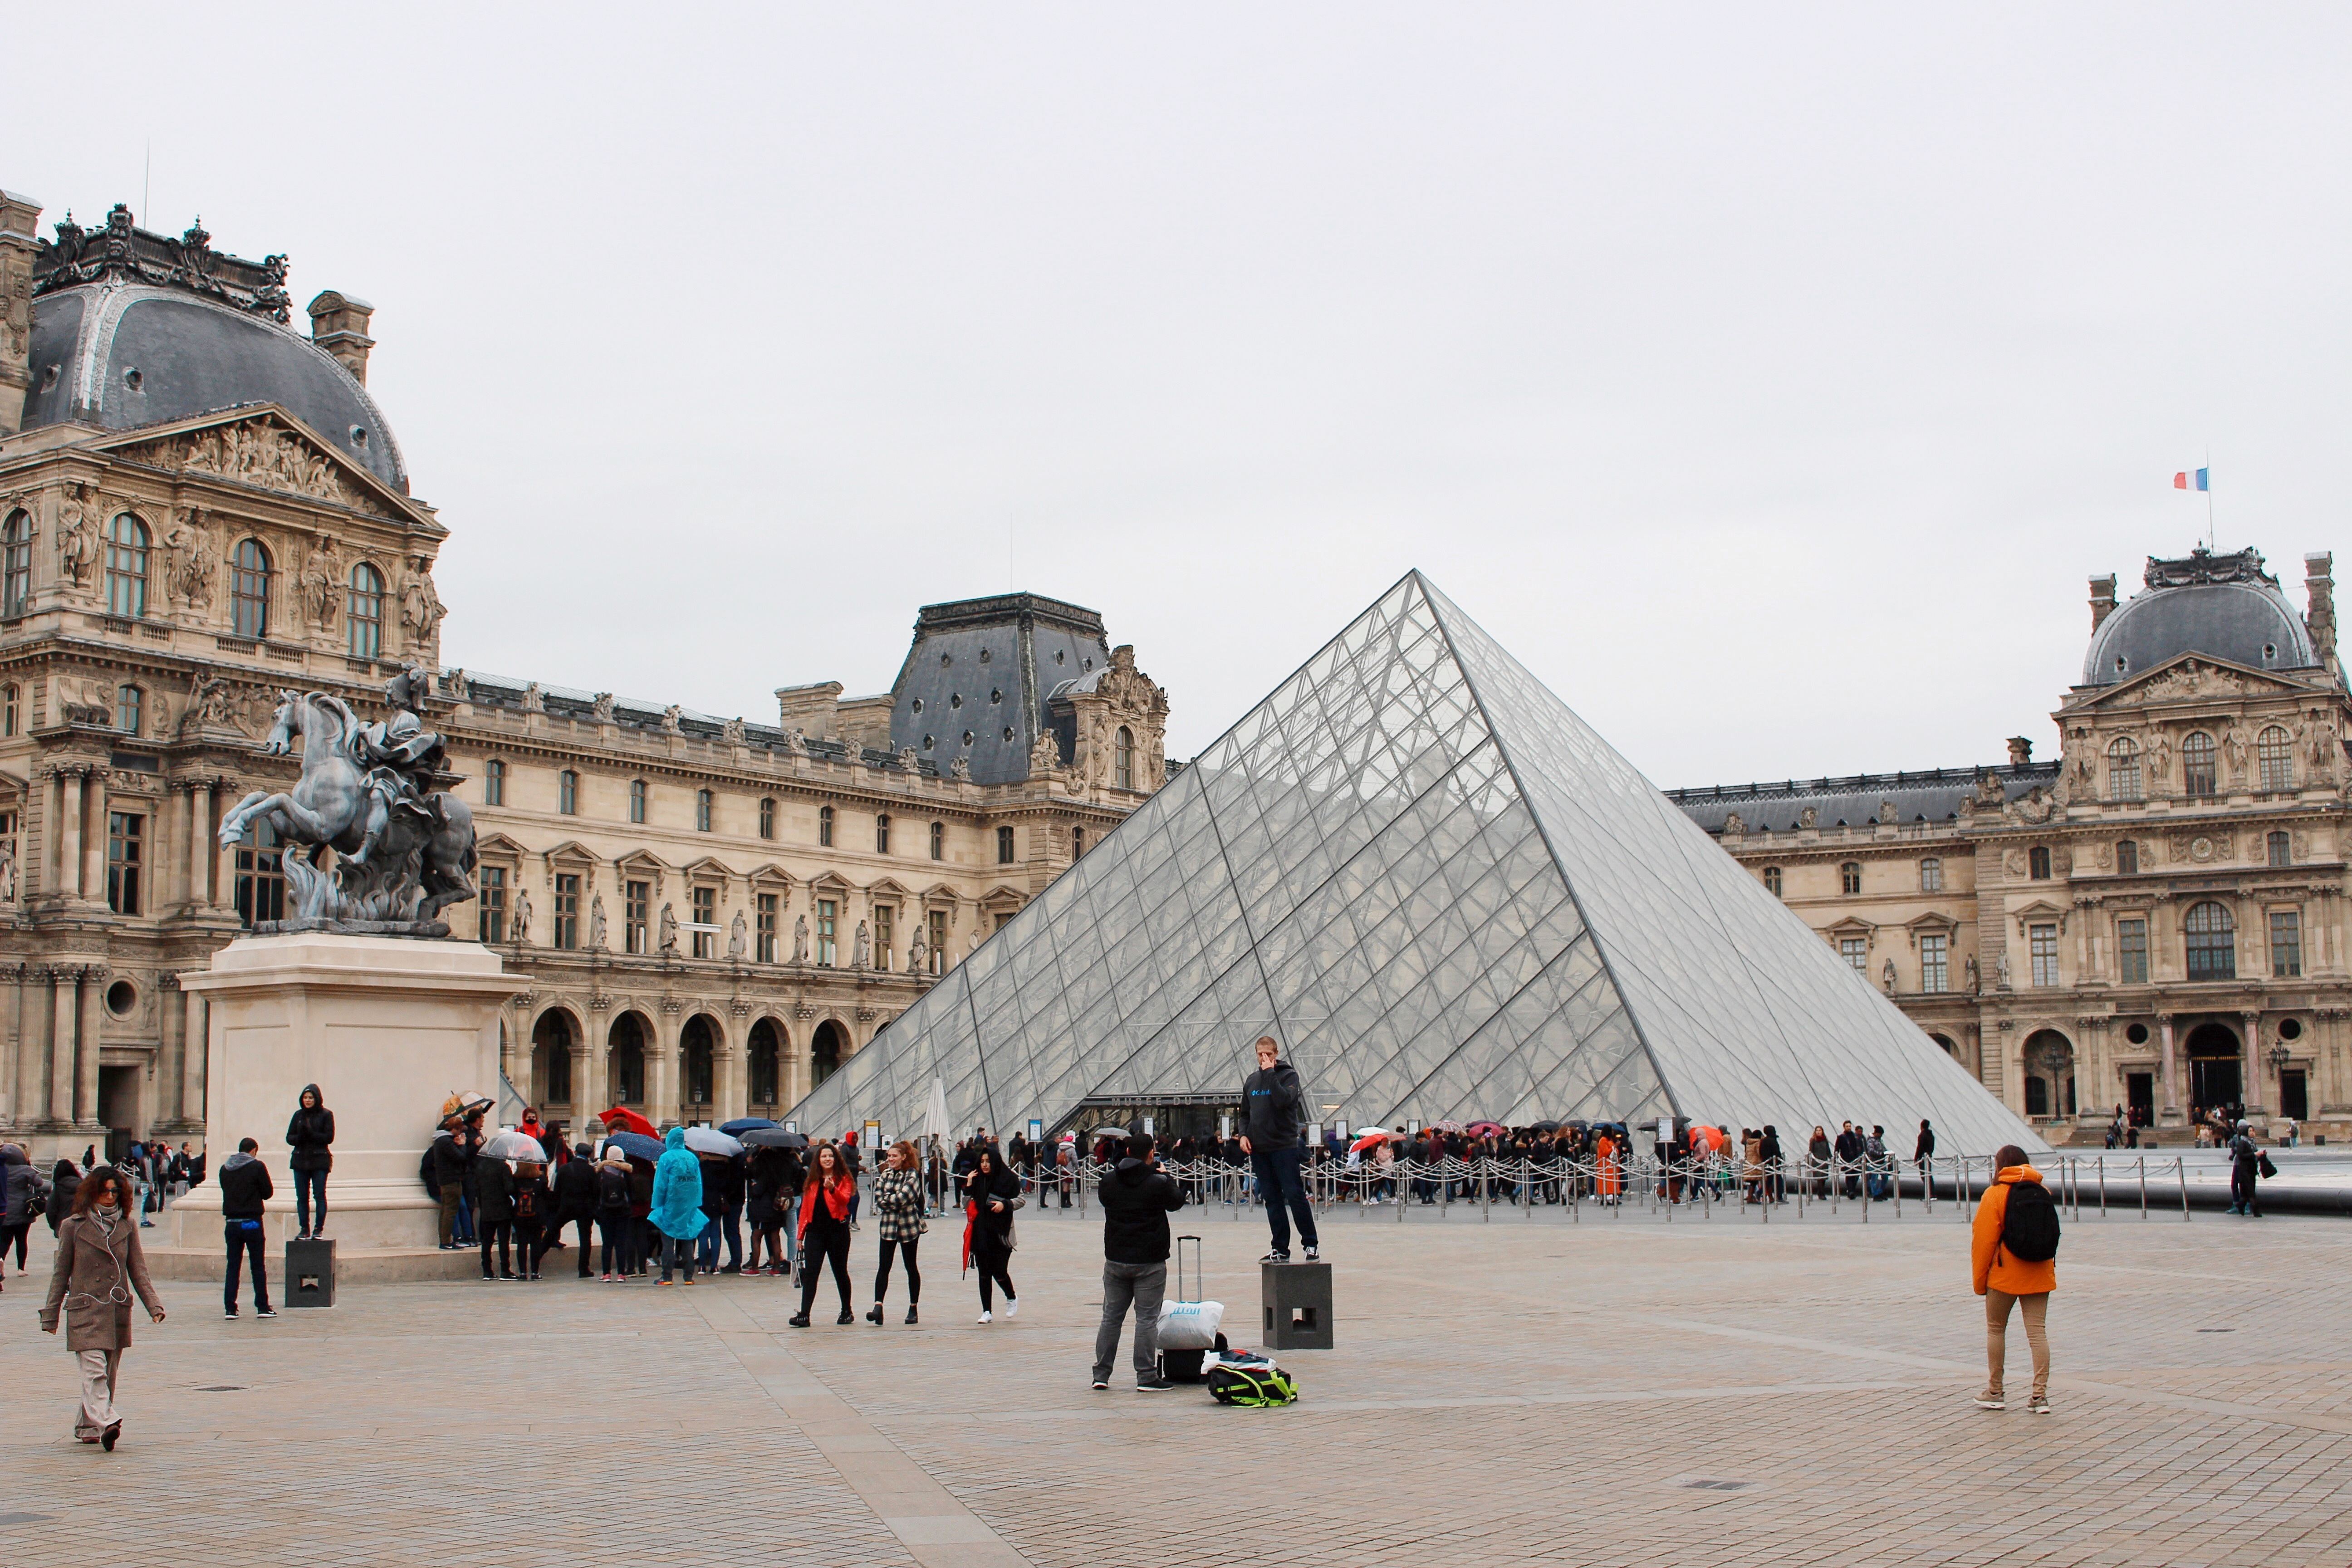 La piramide del Louvre compie 30 anni nel 2019